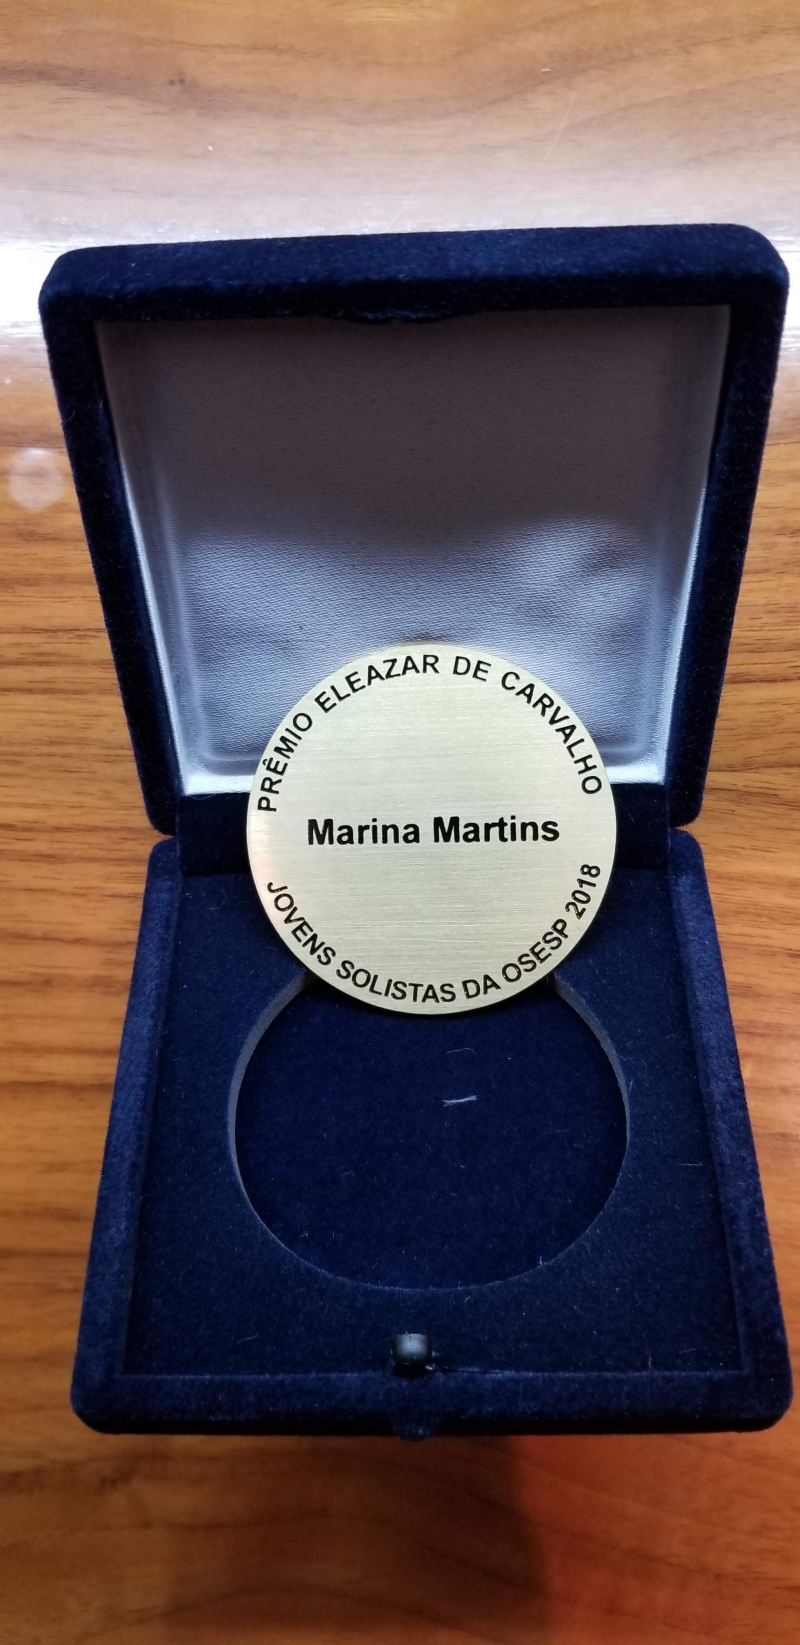 Marina Martins is awarded the Eleazar de Carvalho Medal